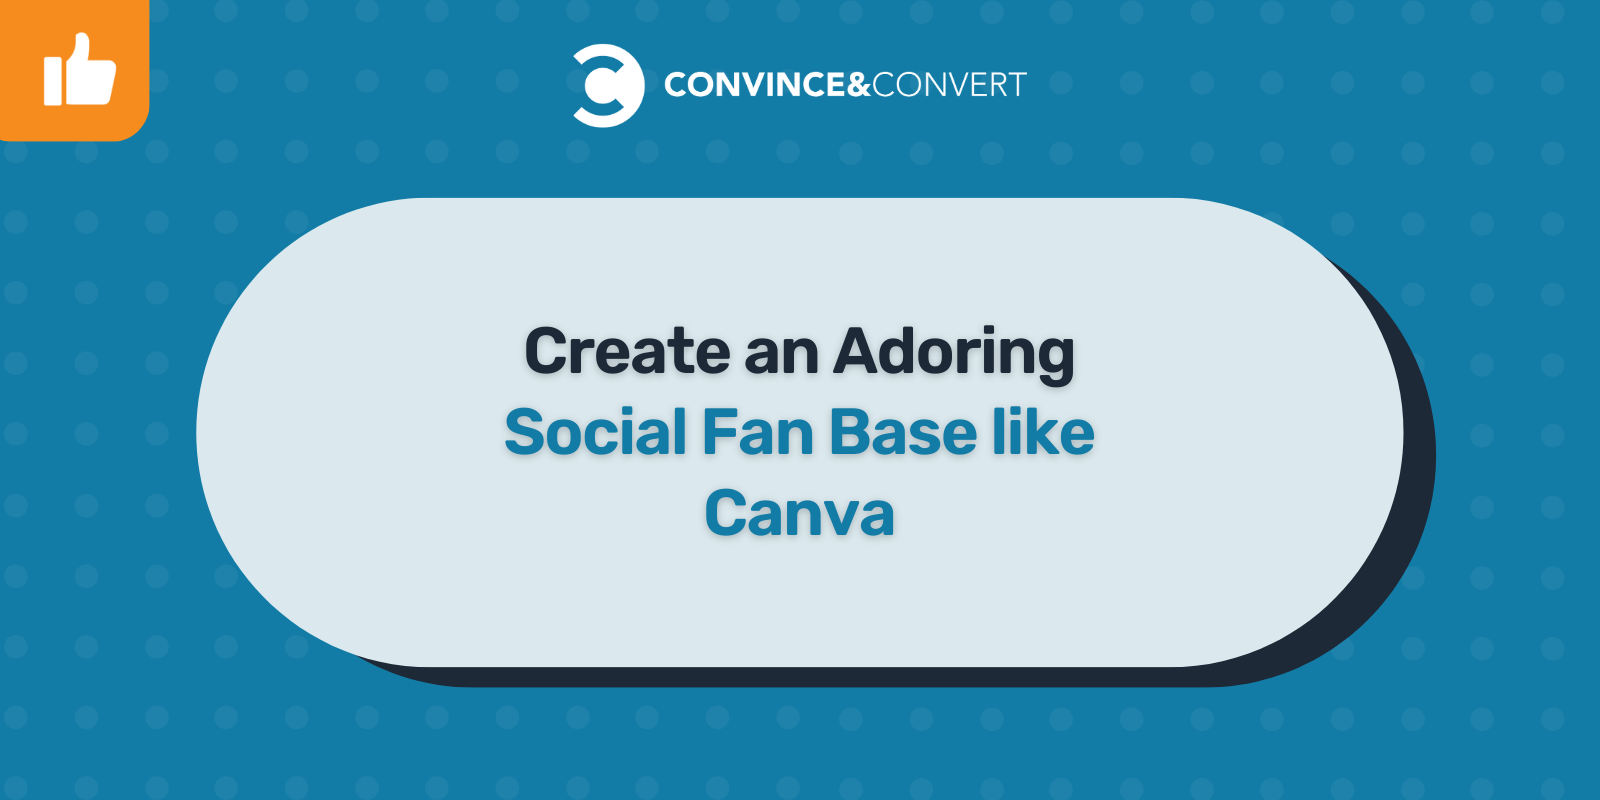 Create an Adoring Social Fan Base like Canva